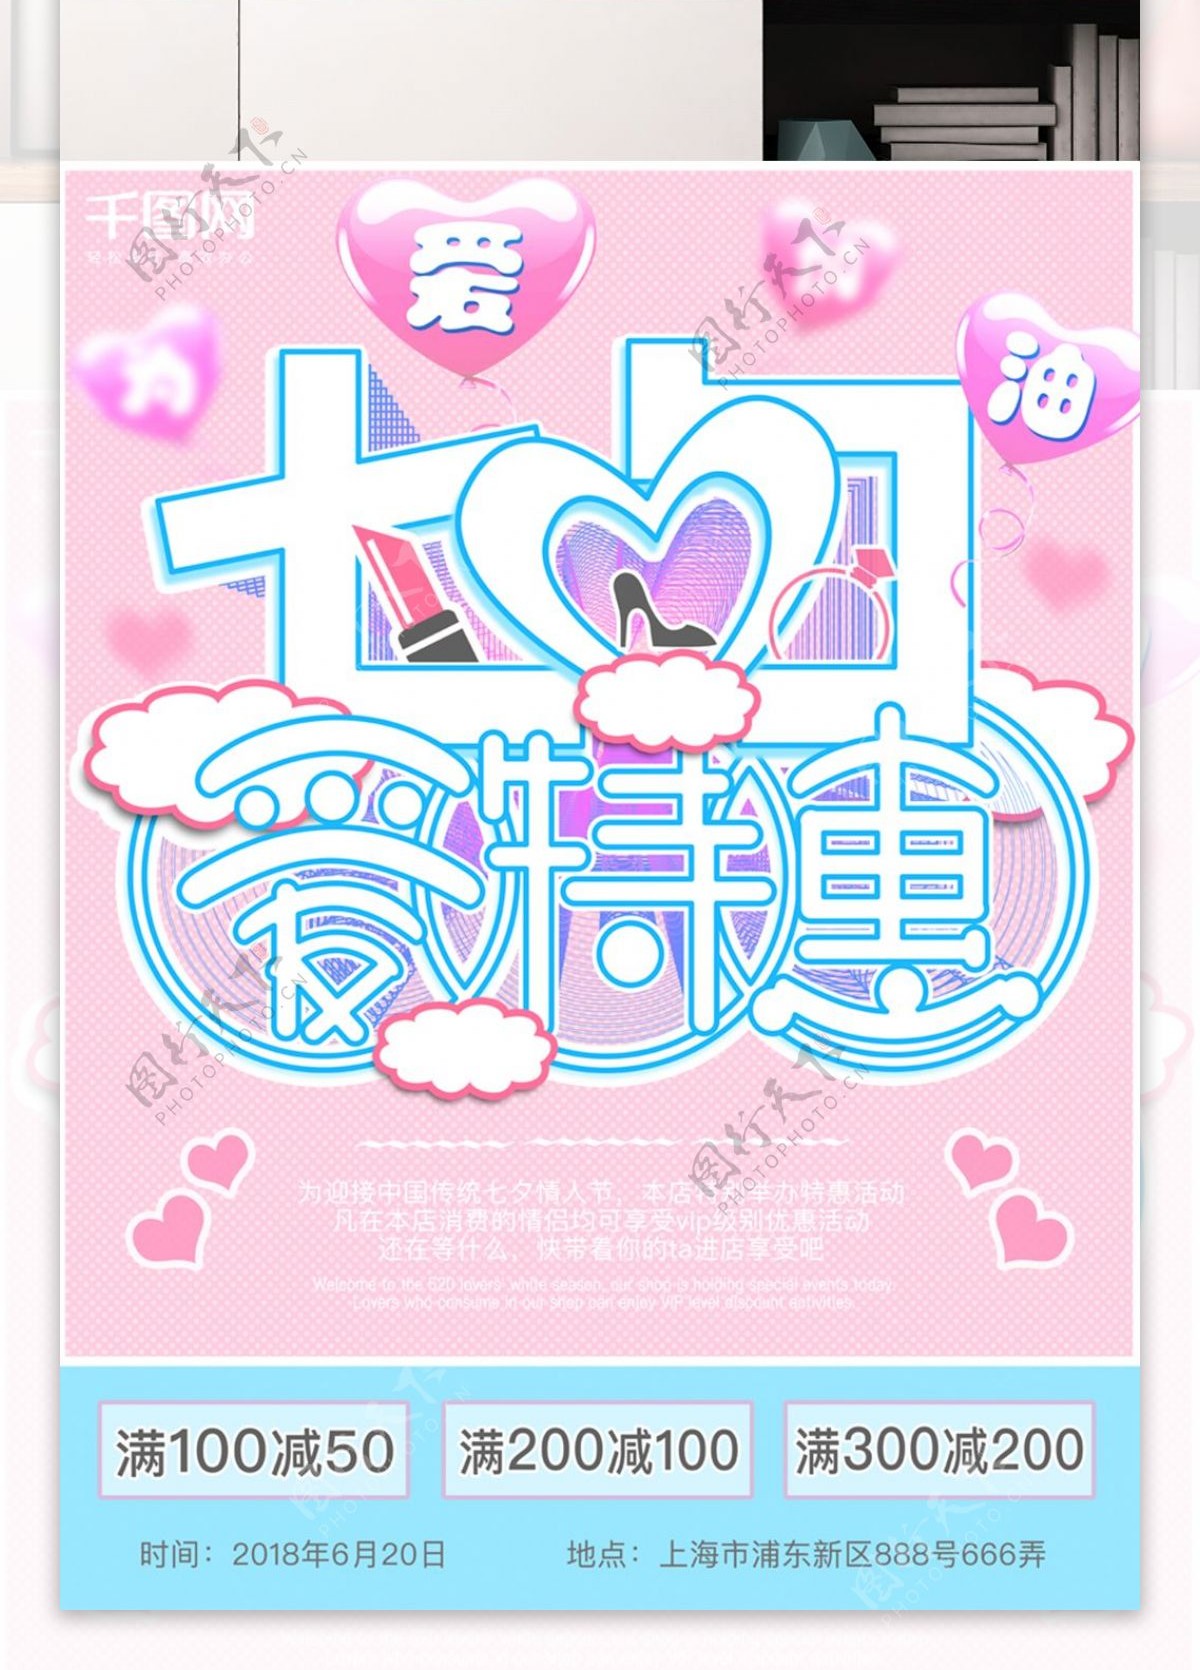 七夕情人节创意字体设计清新原创节日海报